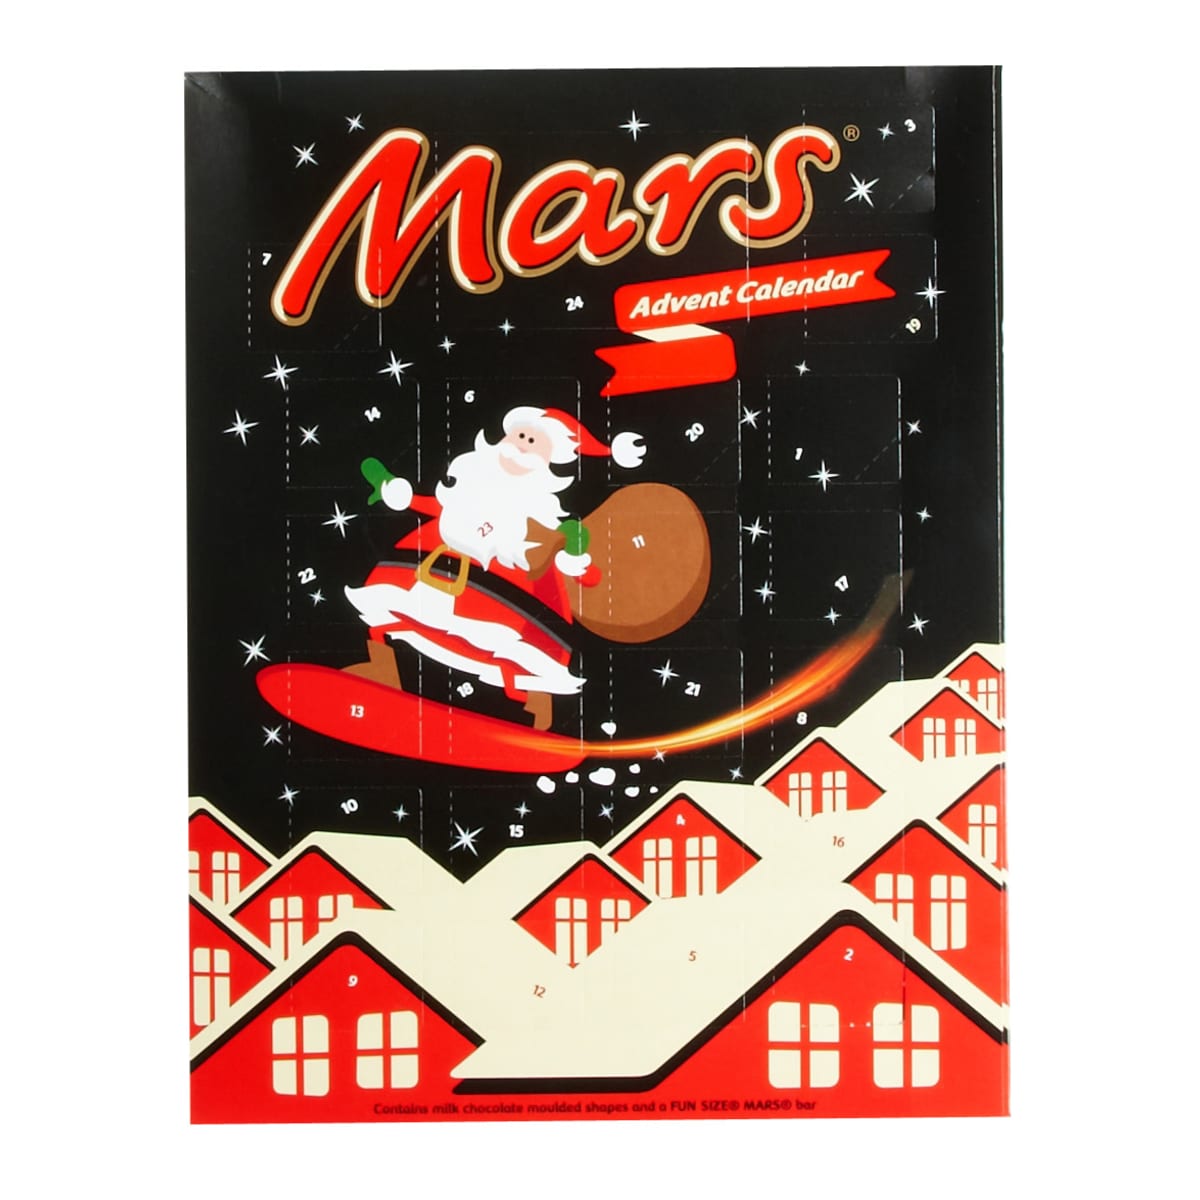 Mars 111 g joulukalenteri  verkkokauppa